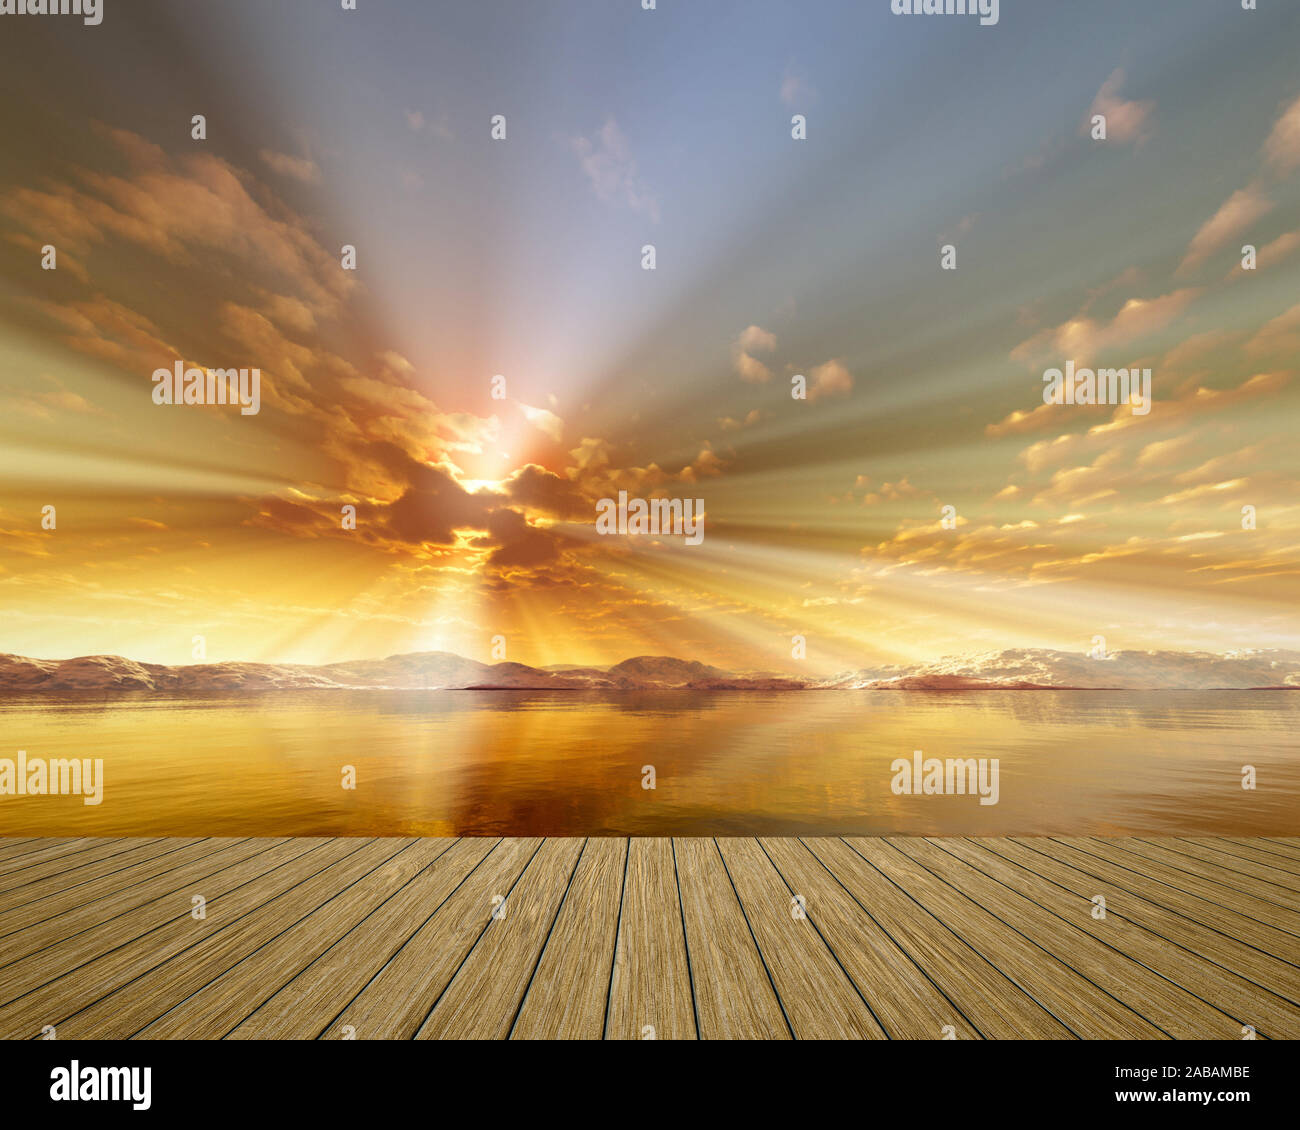 Sicht von einem Bootssteg aus auf einen wunderschoenen Sonnenaufgang ueber dem Ozean Stock Photo